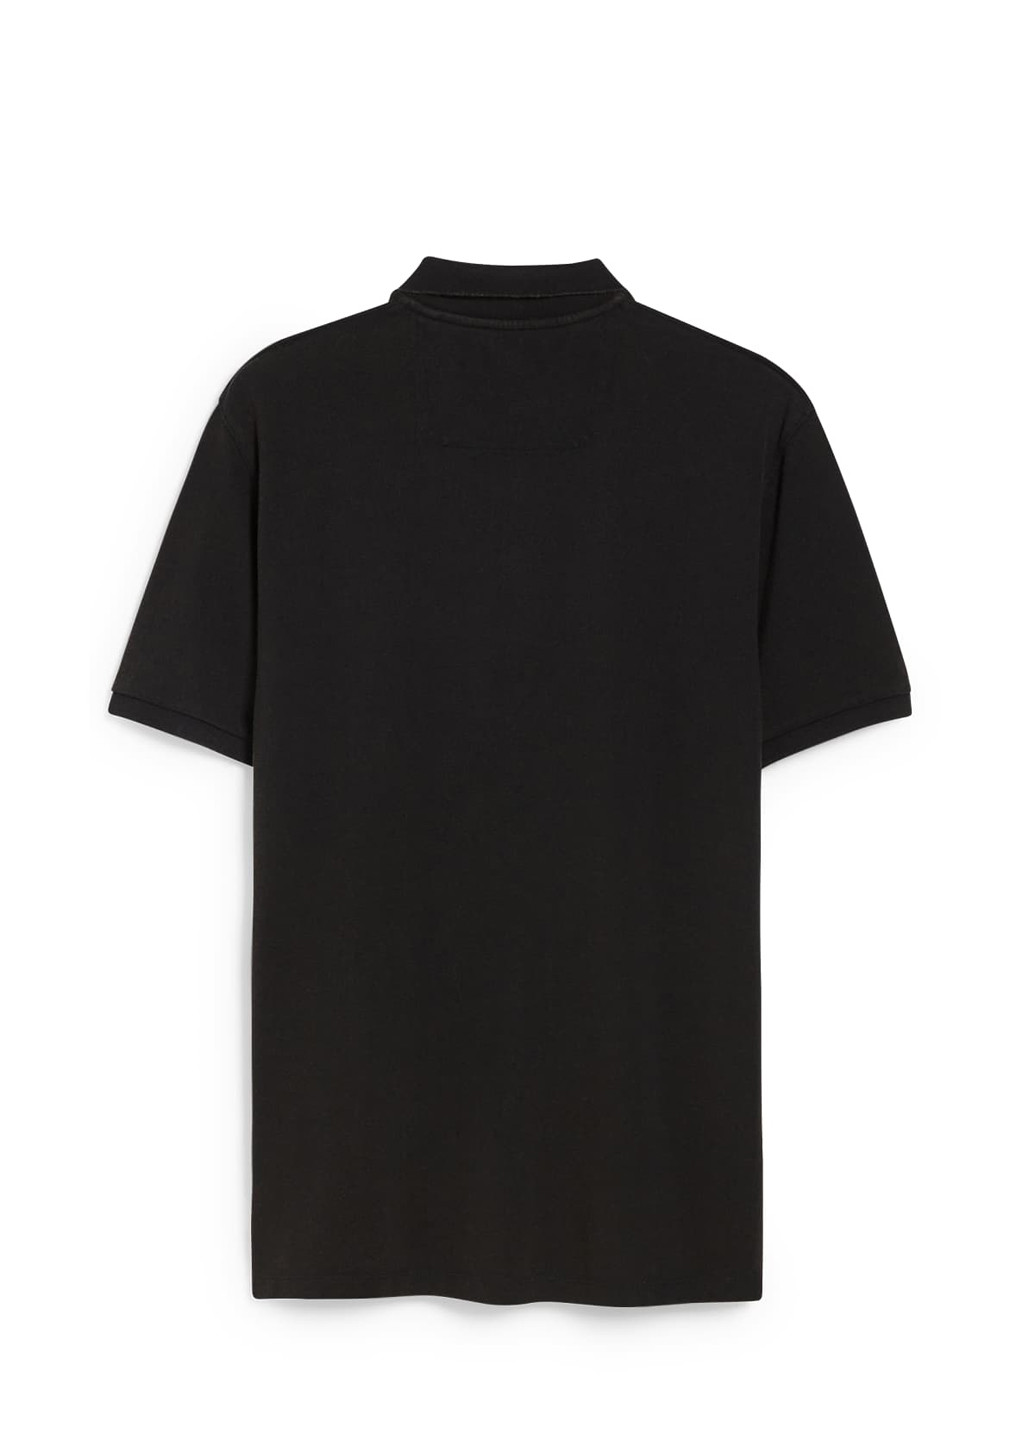 Черная футболка-поло для мужчин C&A однотонная